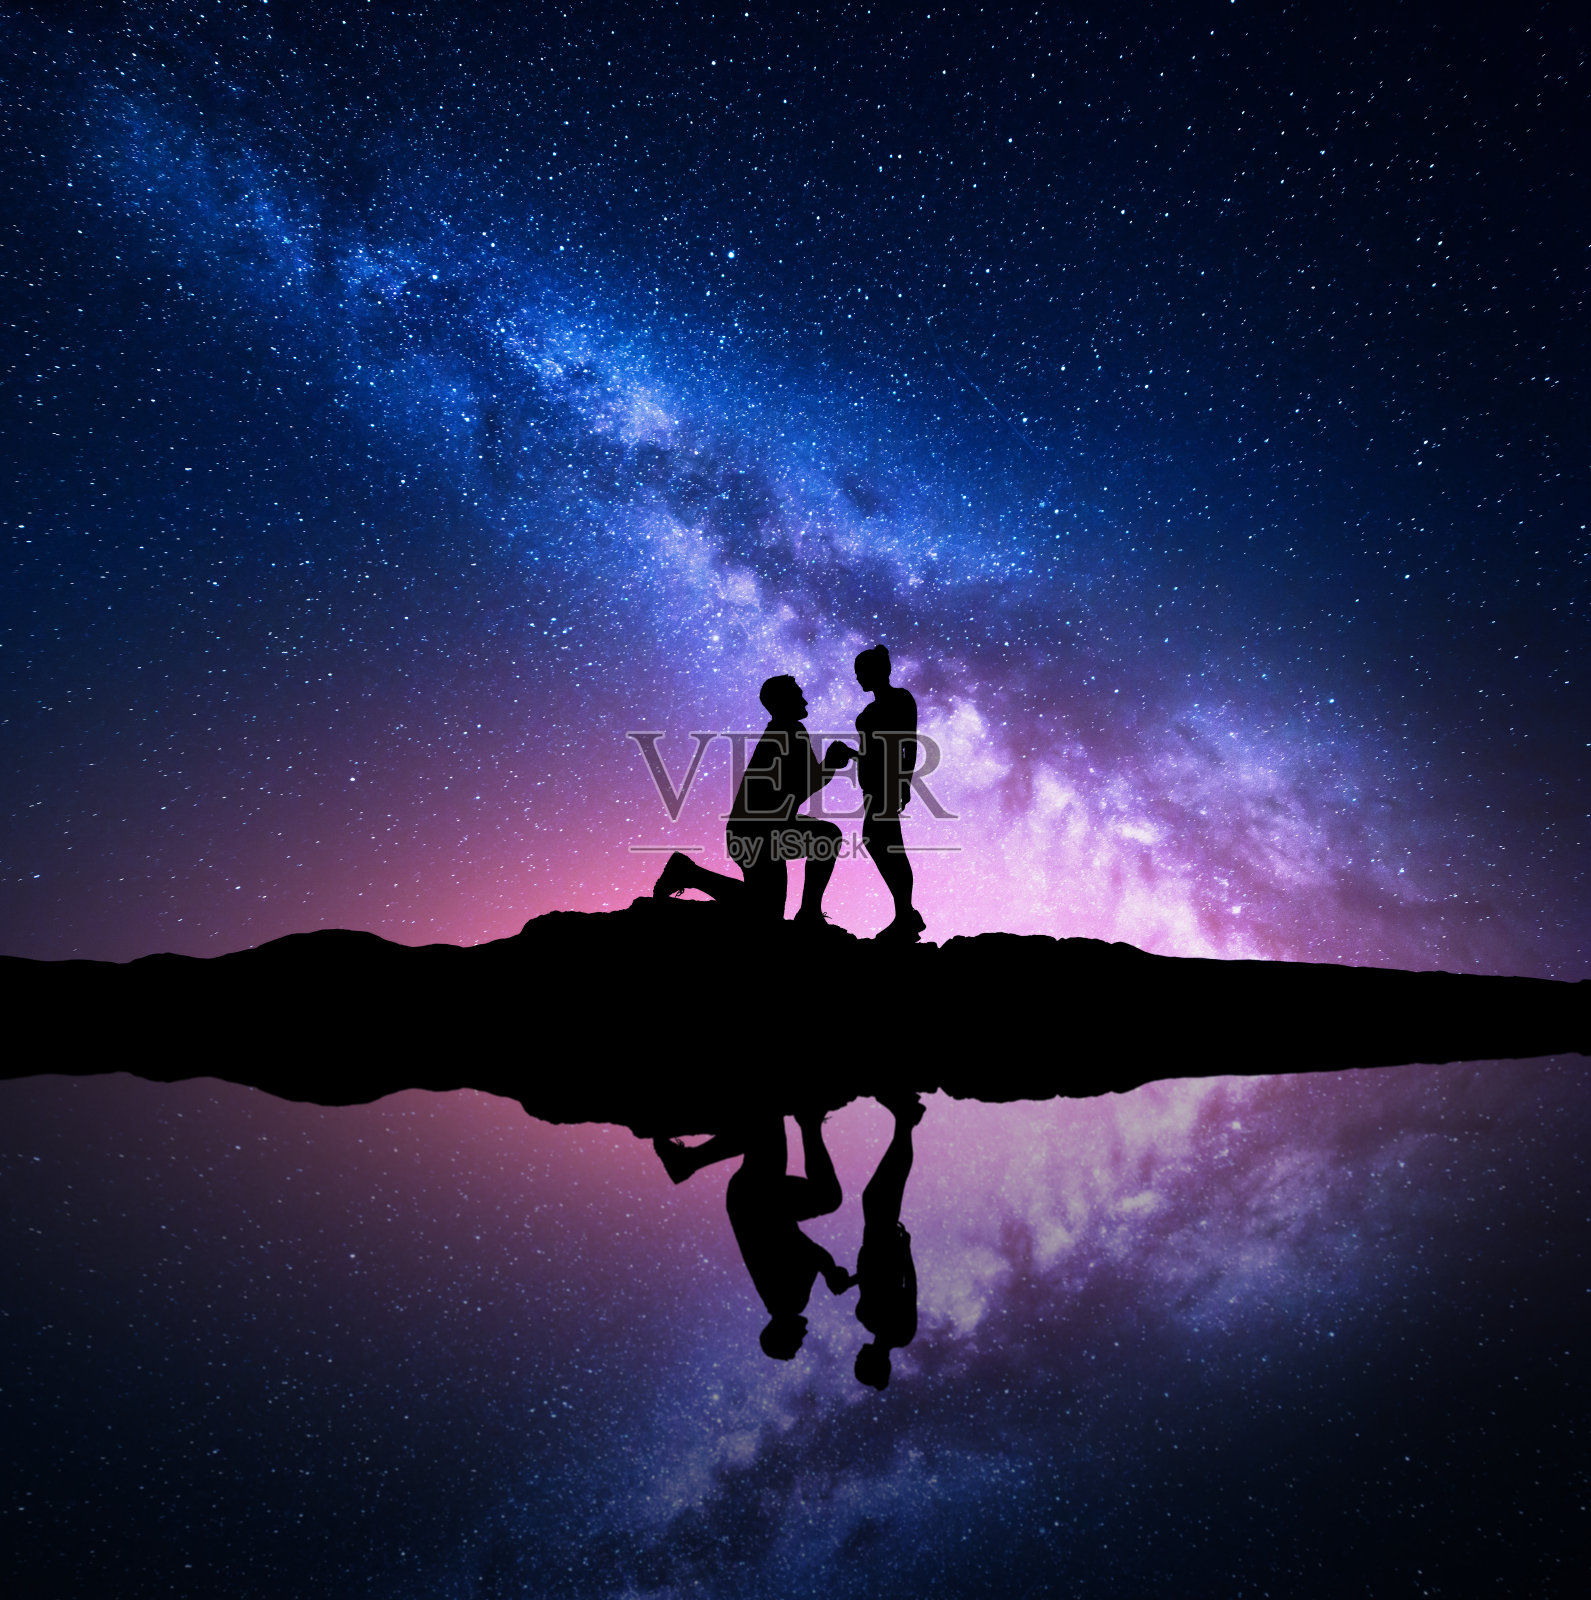 银河系。夜空中点缀着一对情侣的剪影照片摄影图片